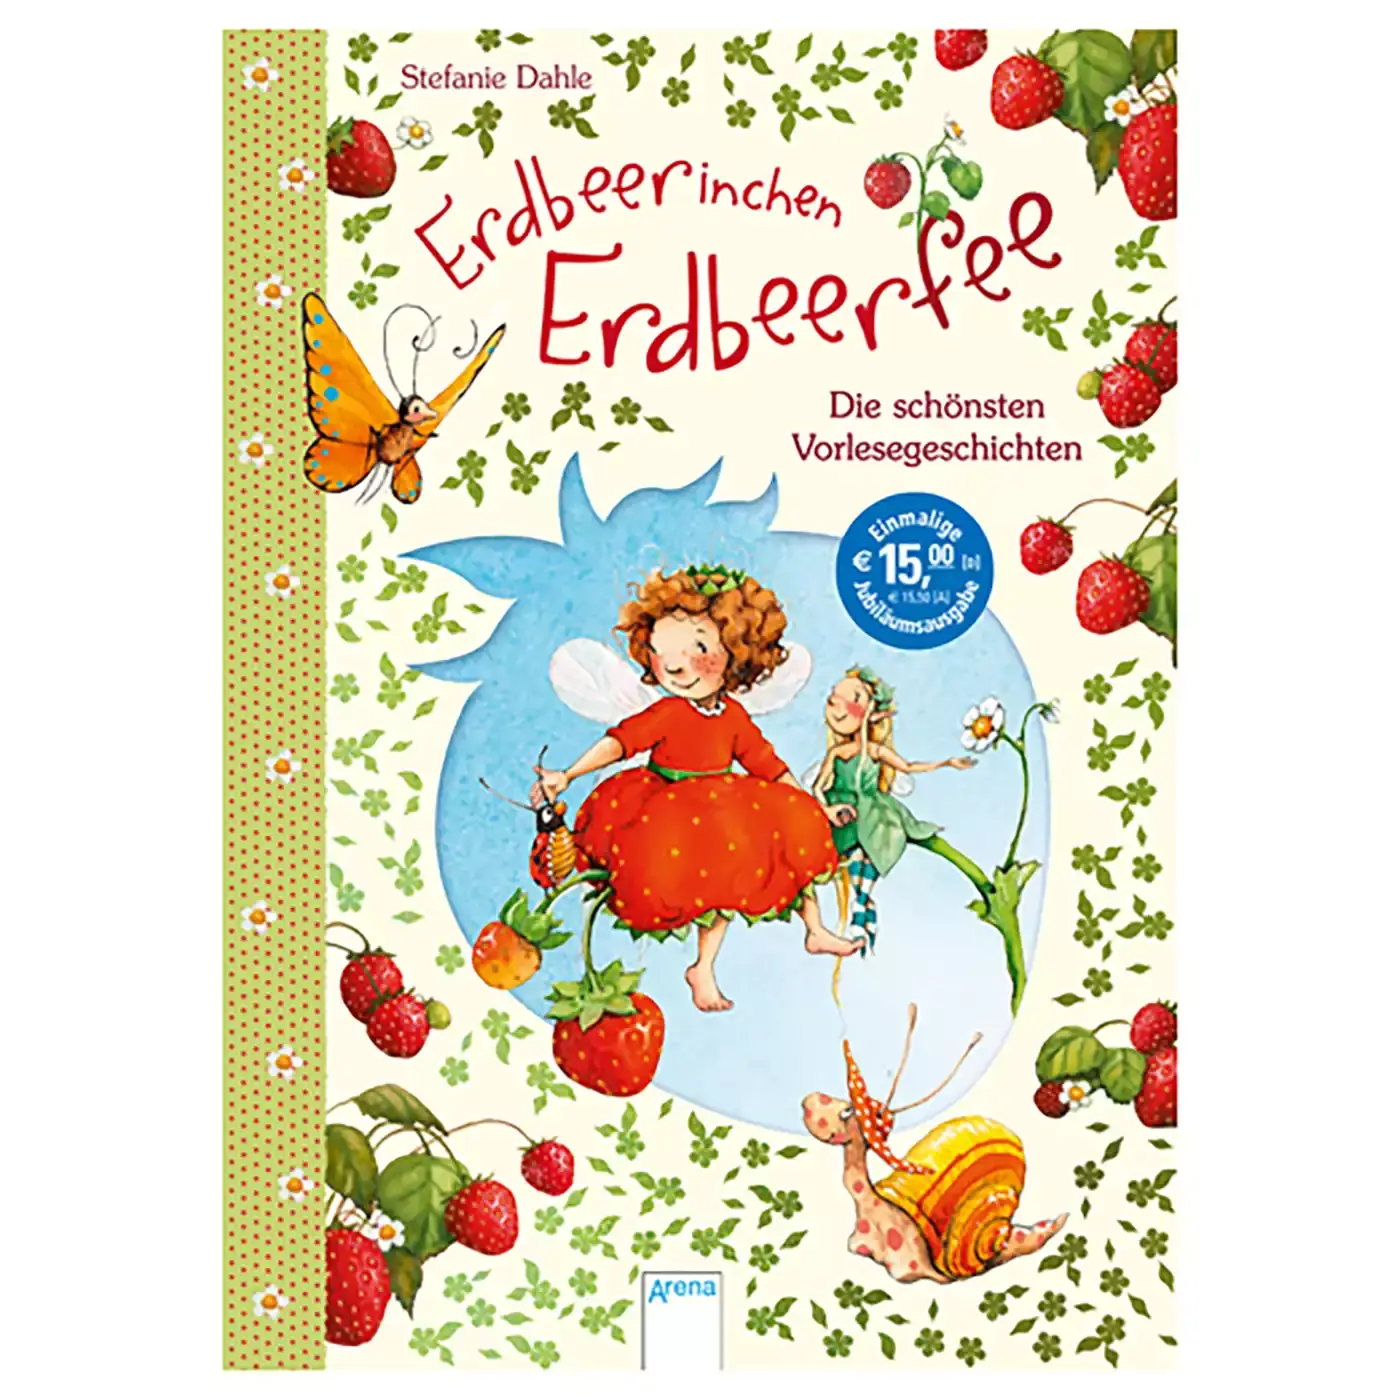 Erdbeerinchen Erdbeerfee - Die schönsten Vorlesegeschichten Arena 2000579397806 3